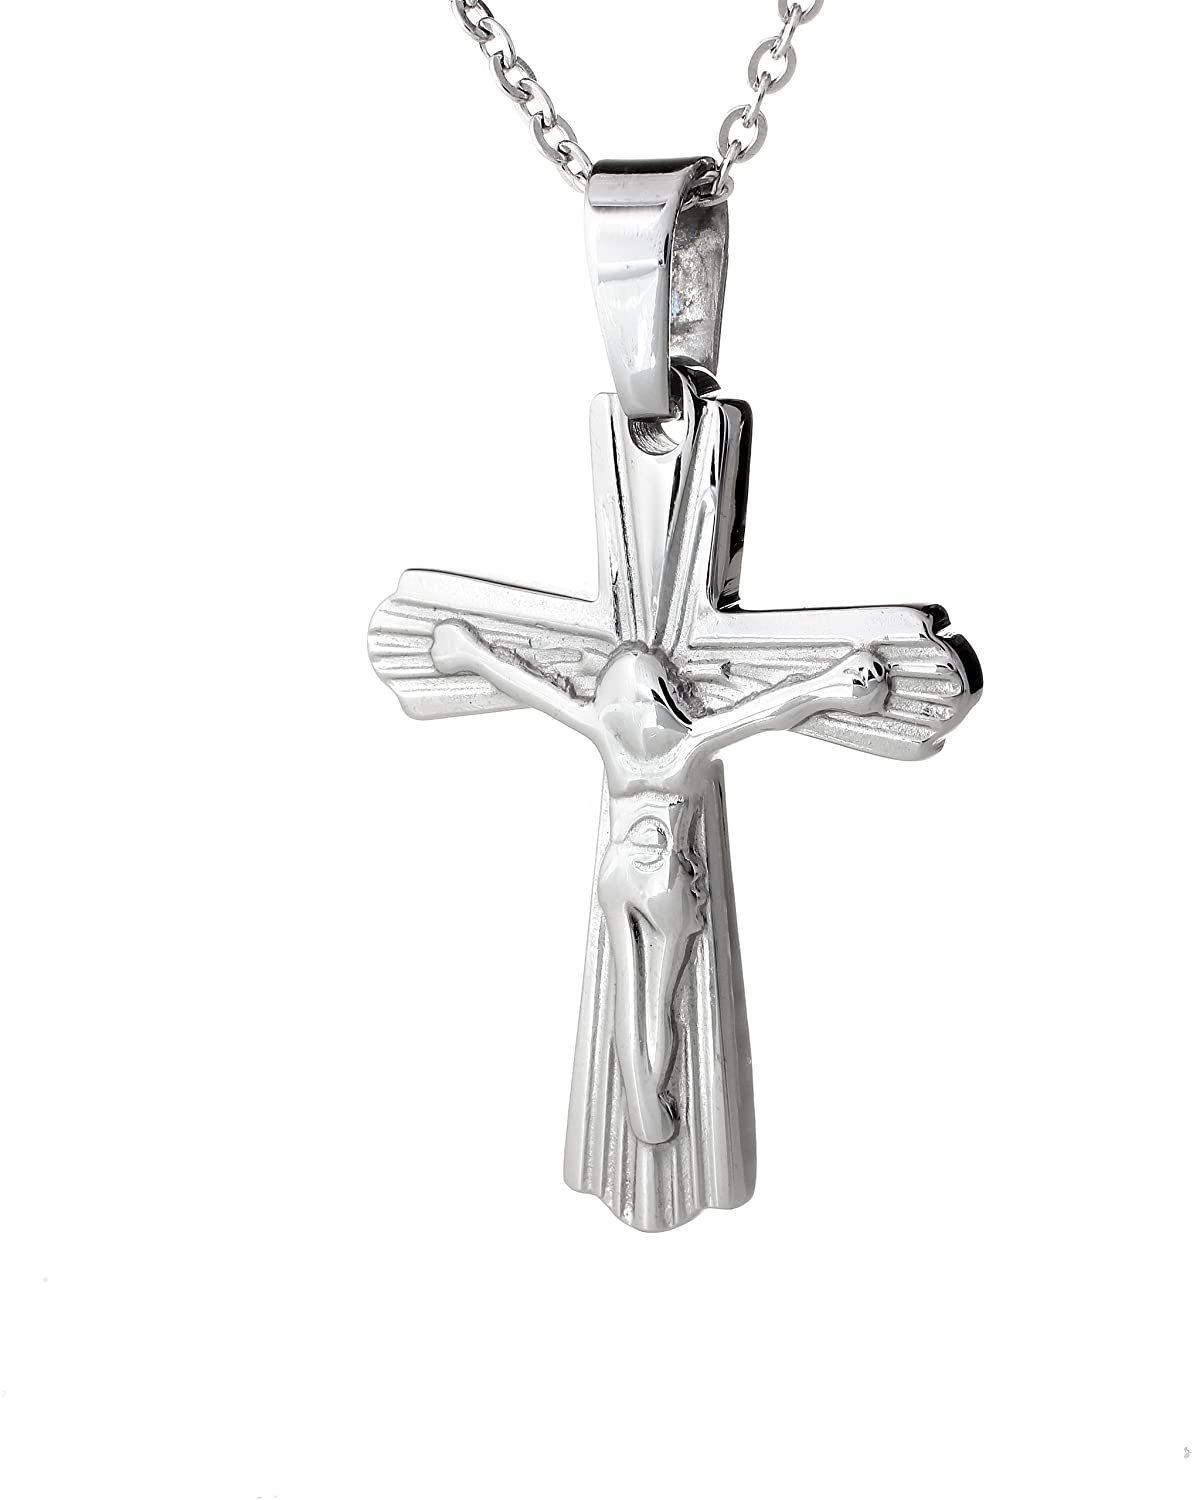 Karisma Kette mit Anhänger Unisex Edelstahl Kettenanhänger Kreuz XS Silber Farbe mit EdelstahKette SCP2001 - 50 Zentimeter